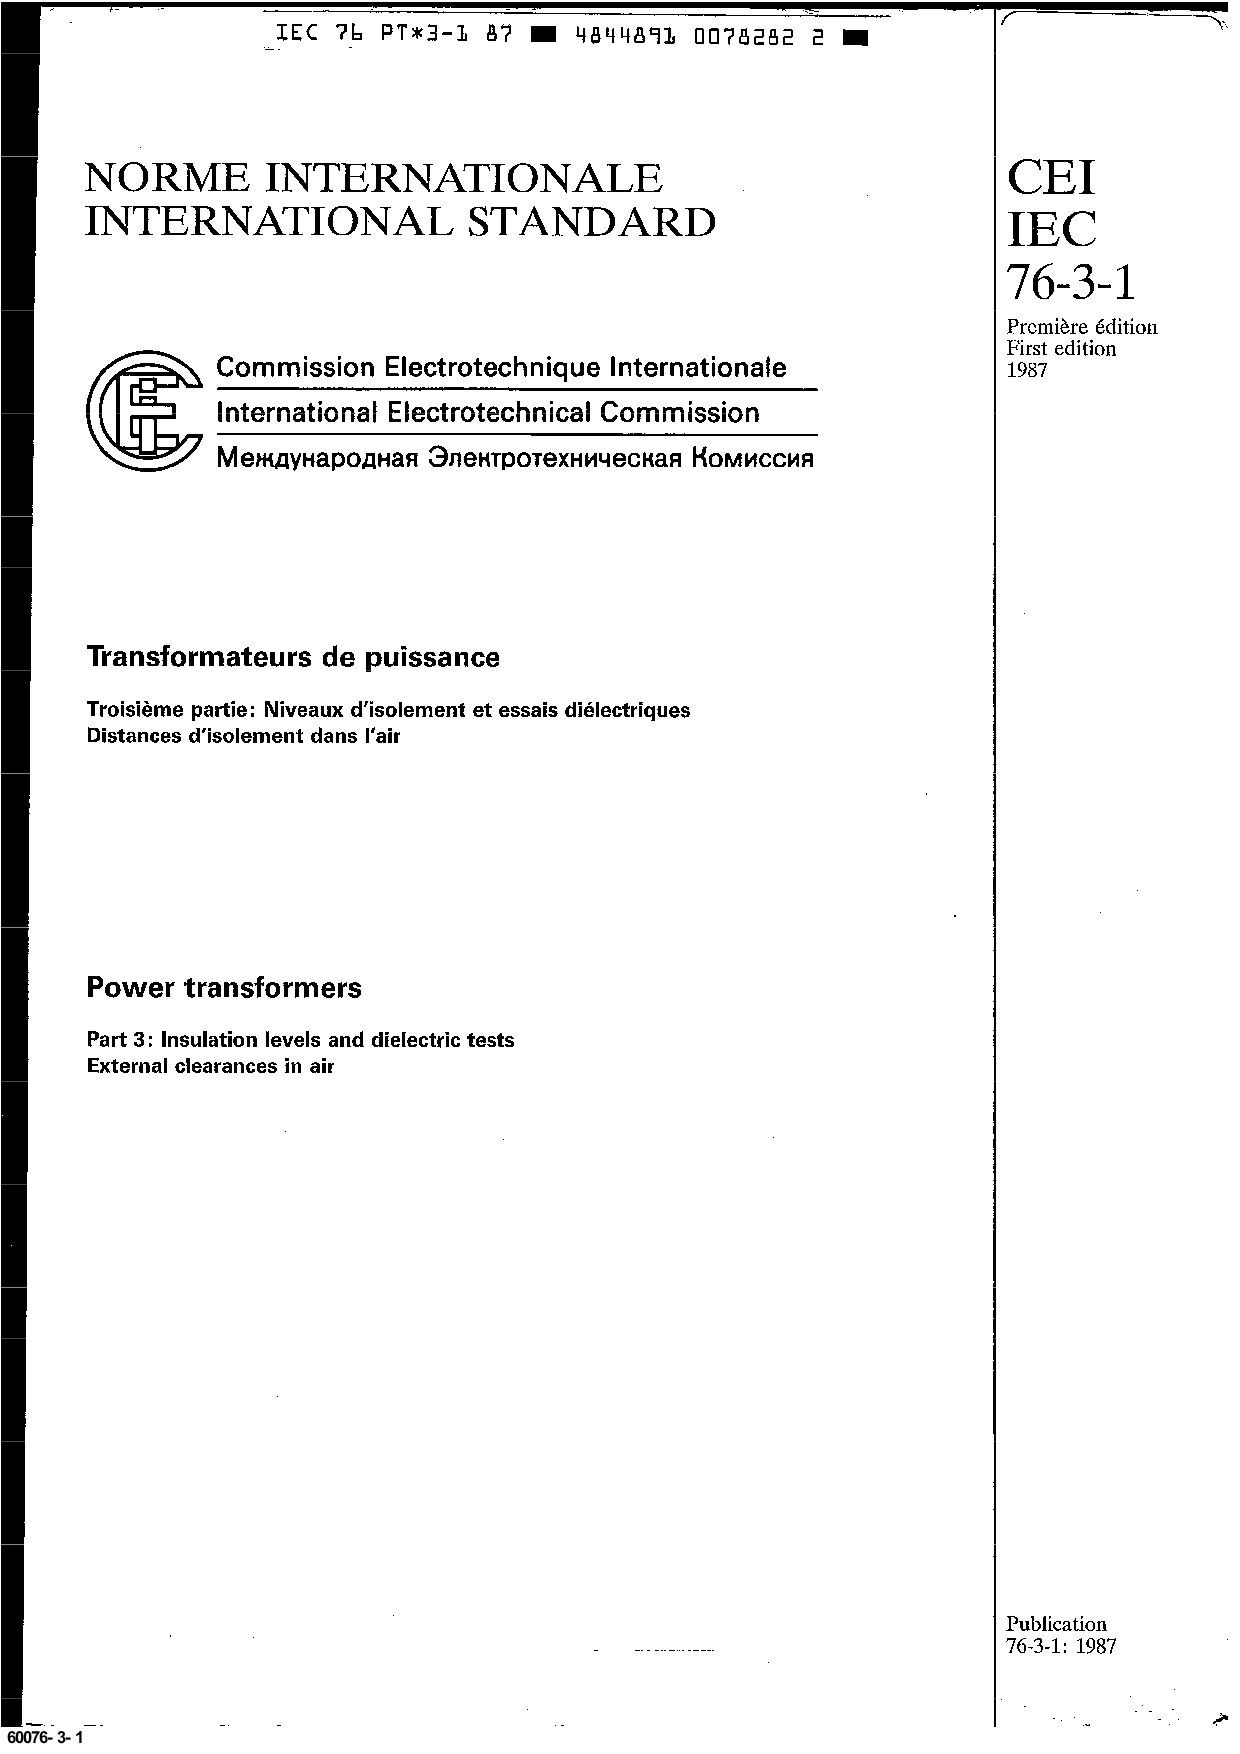 IEC 60076-3-1:1987